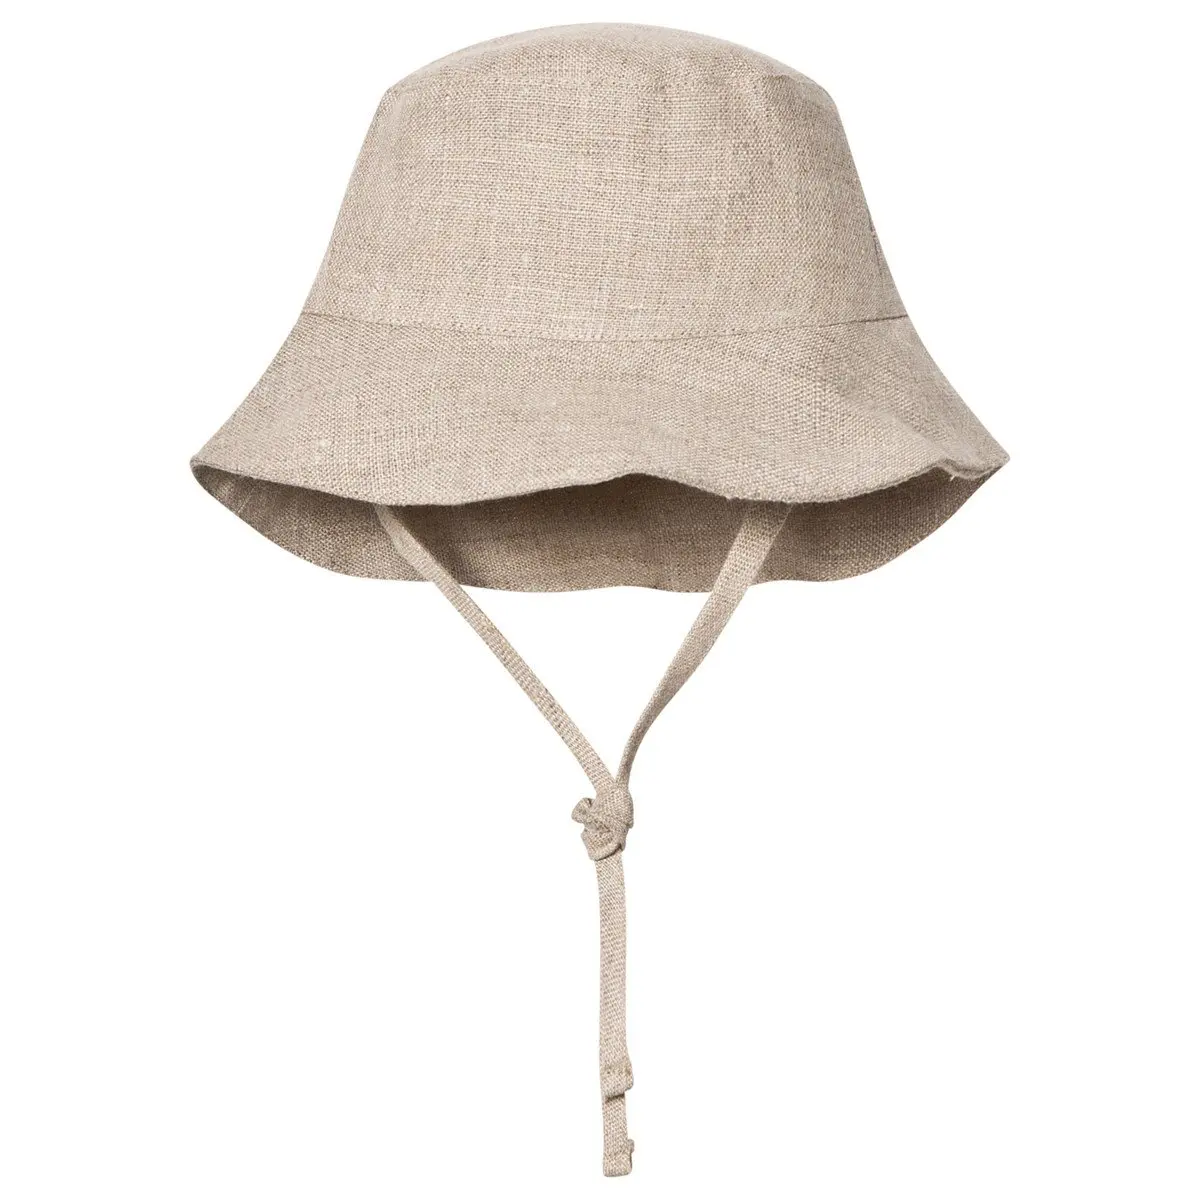 Baby Bucket Hat Pure 100% Linen - Buy Baby Bucket Hat,Pure Linen Hat ...